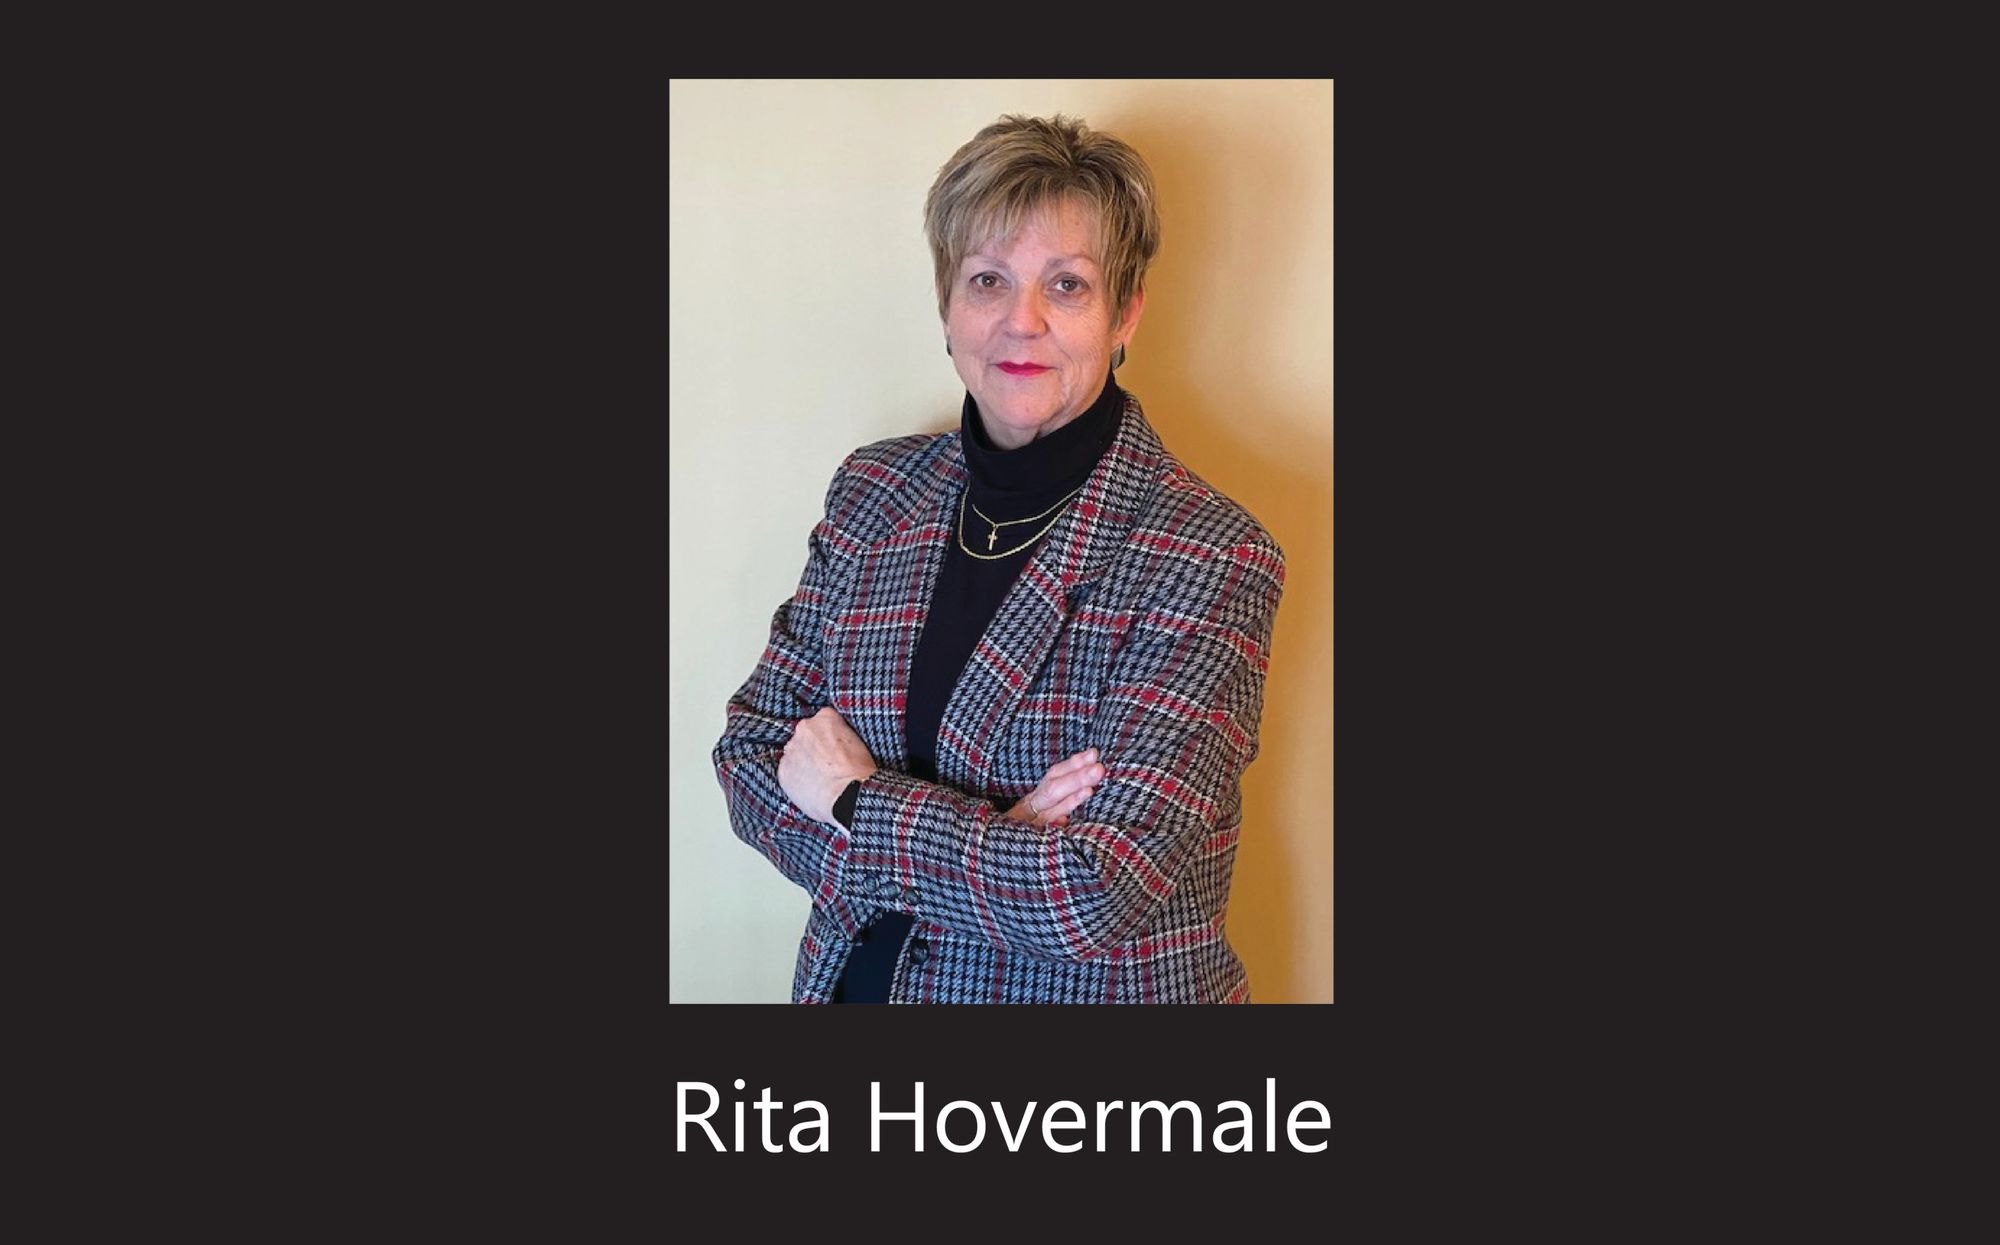 Rita Hovermale